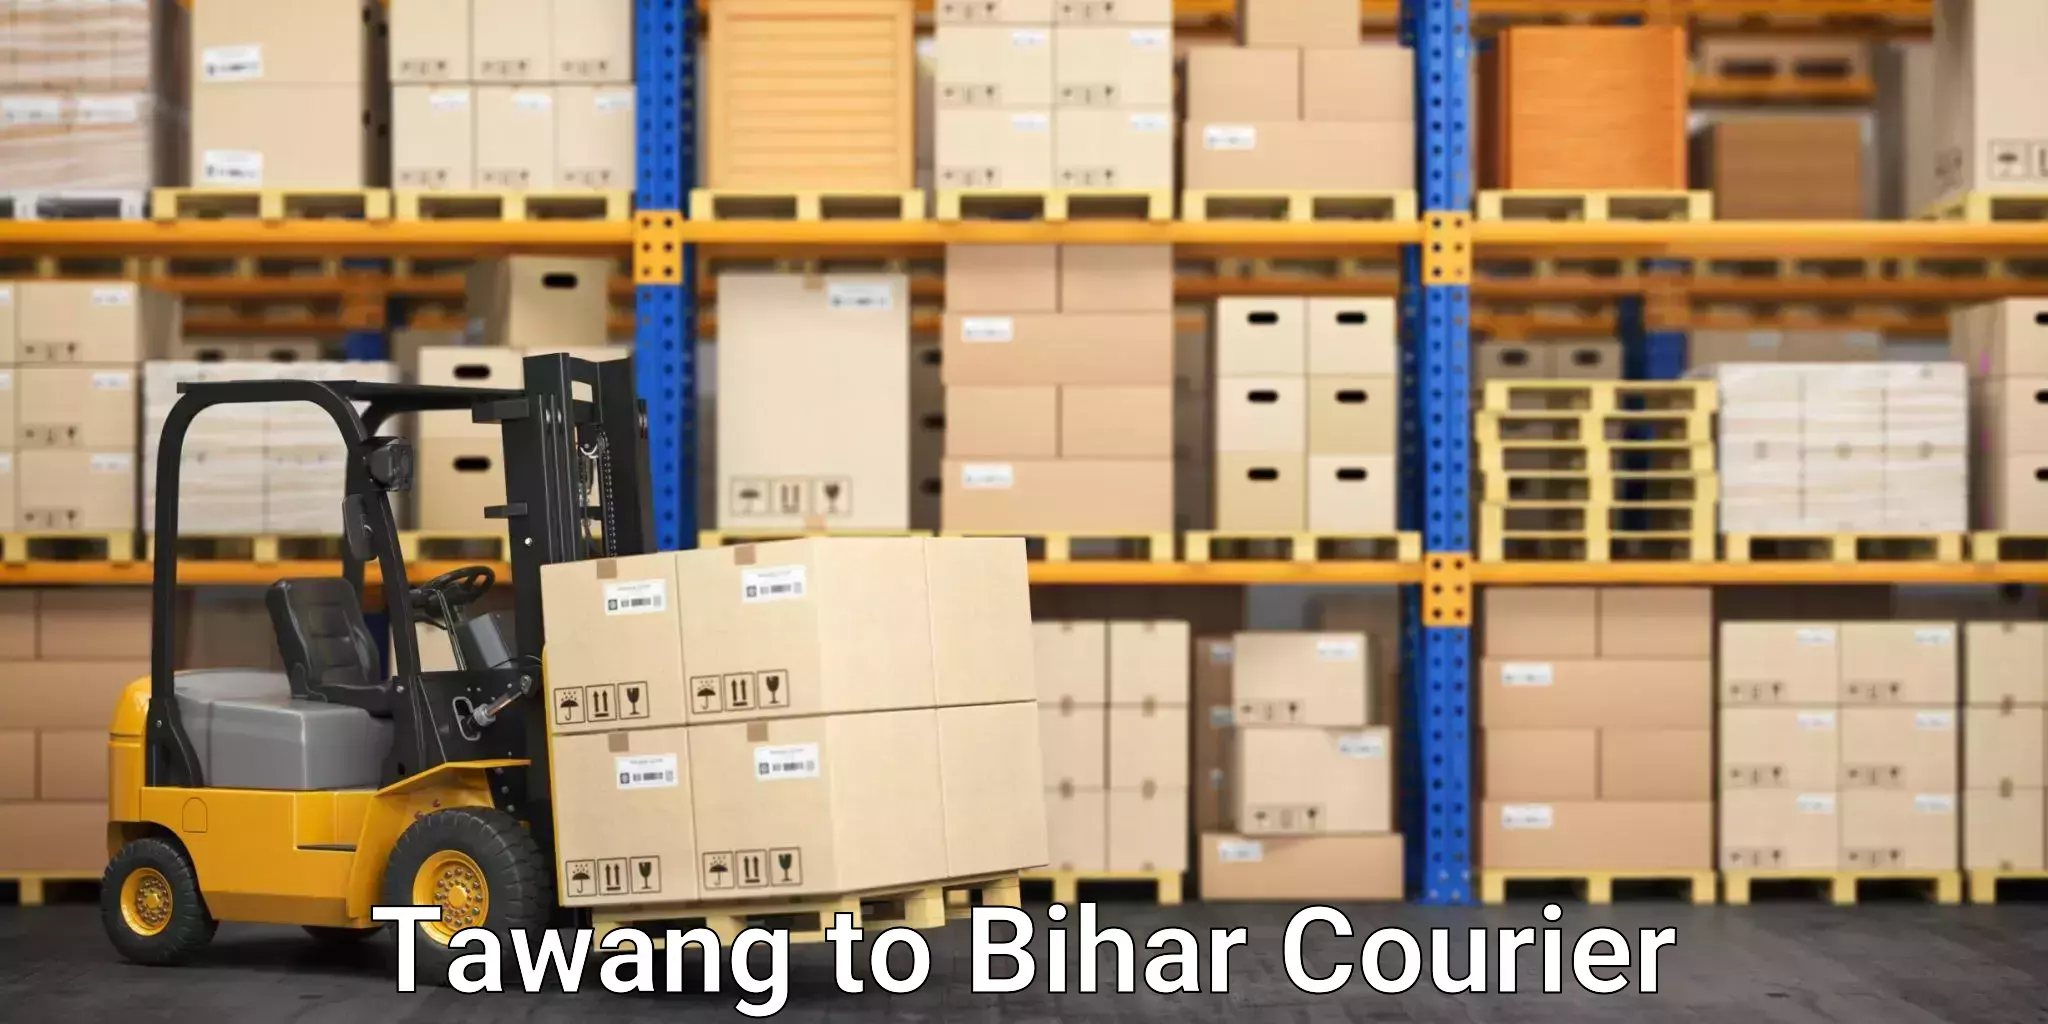 Logistics service provider Tawang to Bharwara